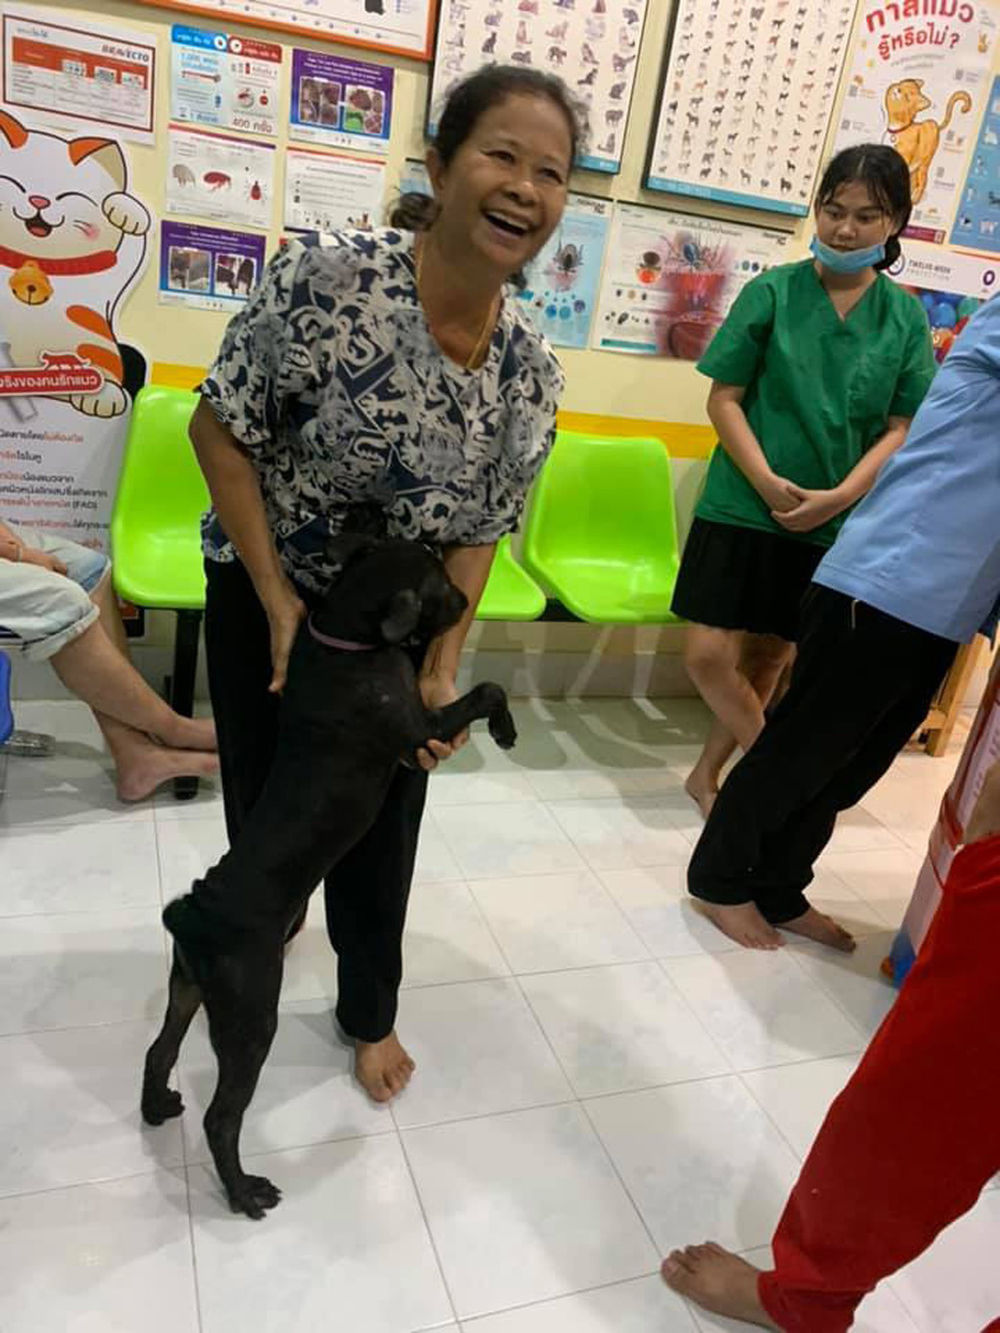  
Chủ của chú chó đã đến đón nó ngay trong đêm, nói rằng nó đột nhiên biến mất vào 2 giờ chiều khiến cả gia đình vất vả đi tìm. Ảnh: Bangkok Post